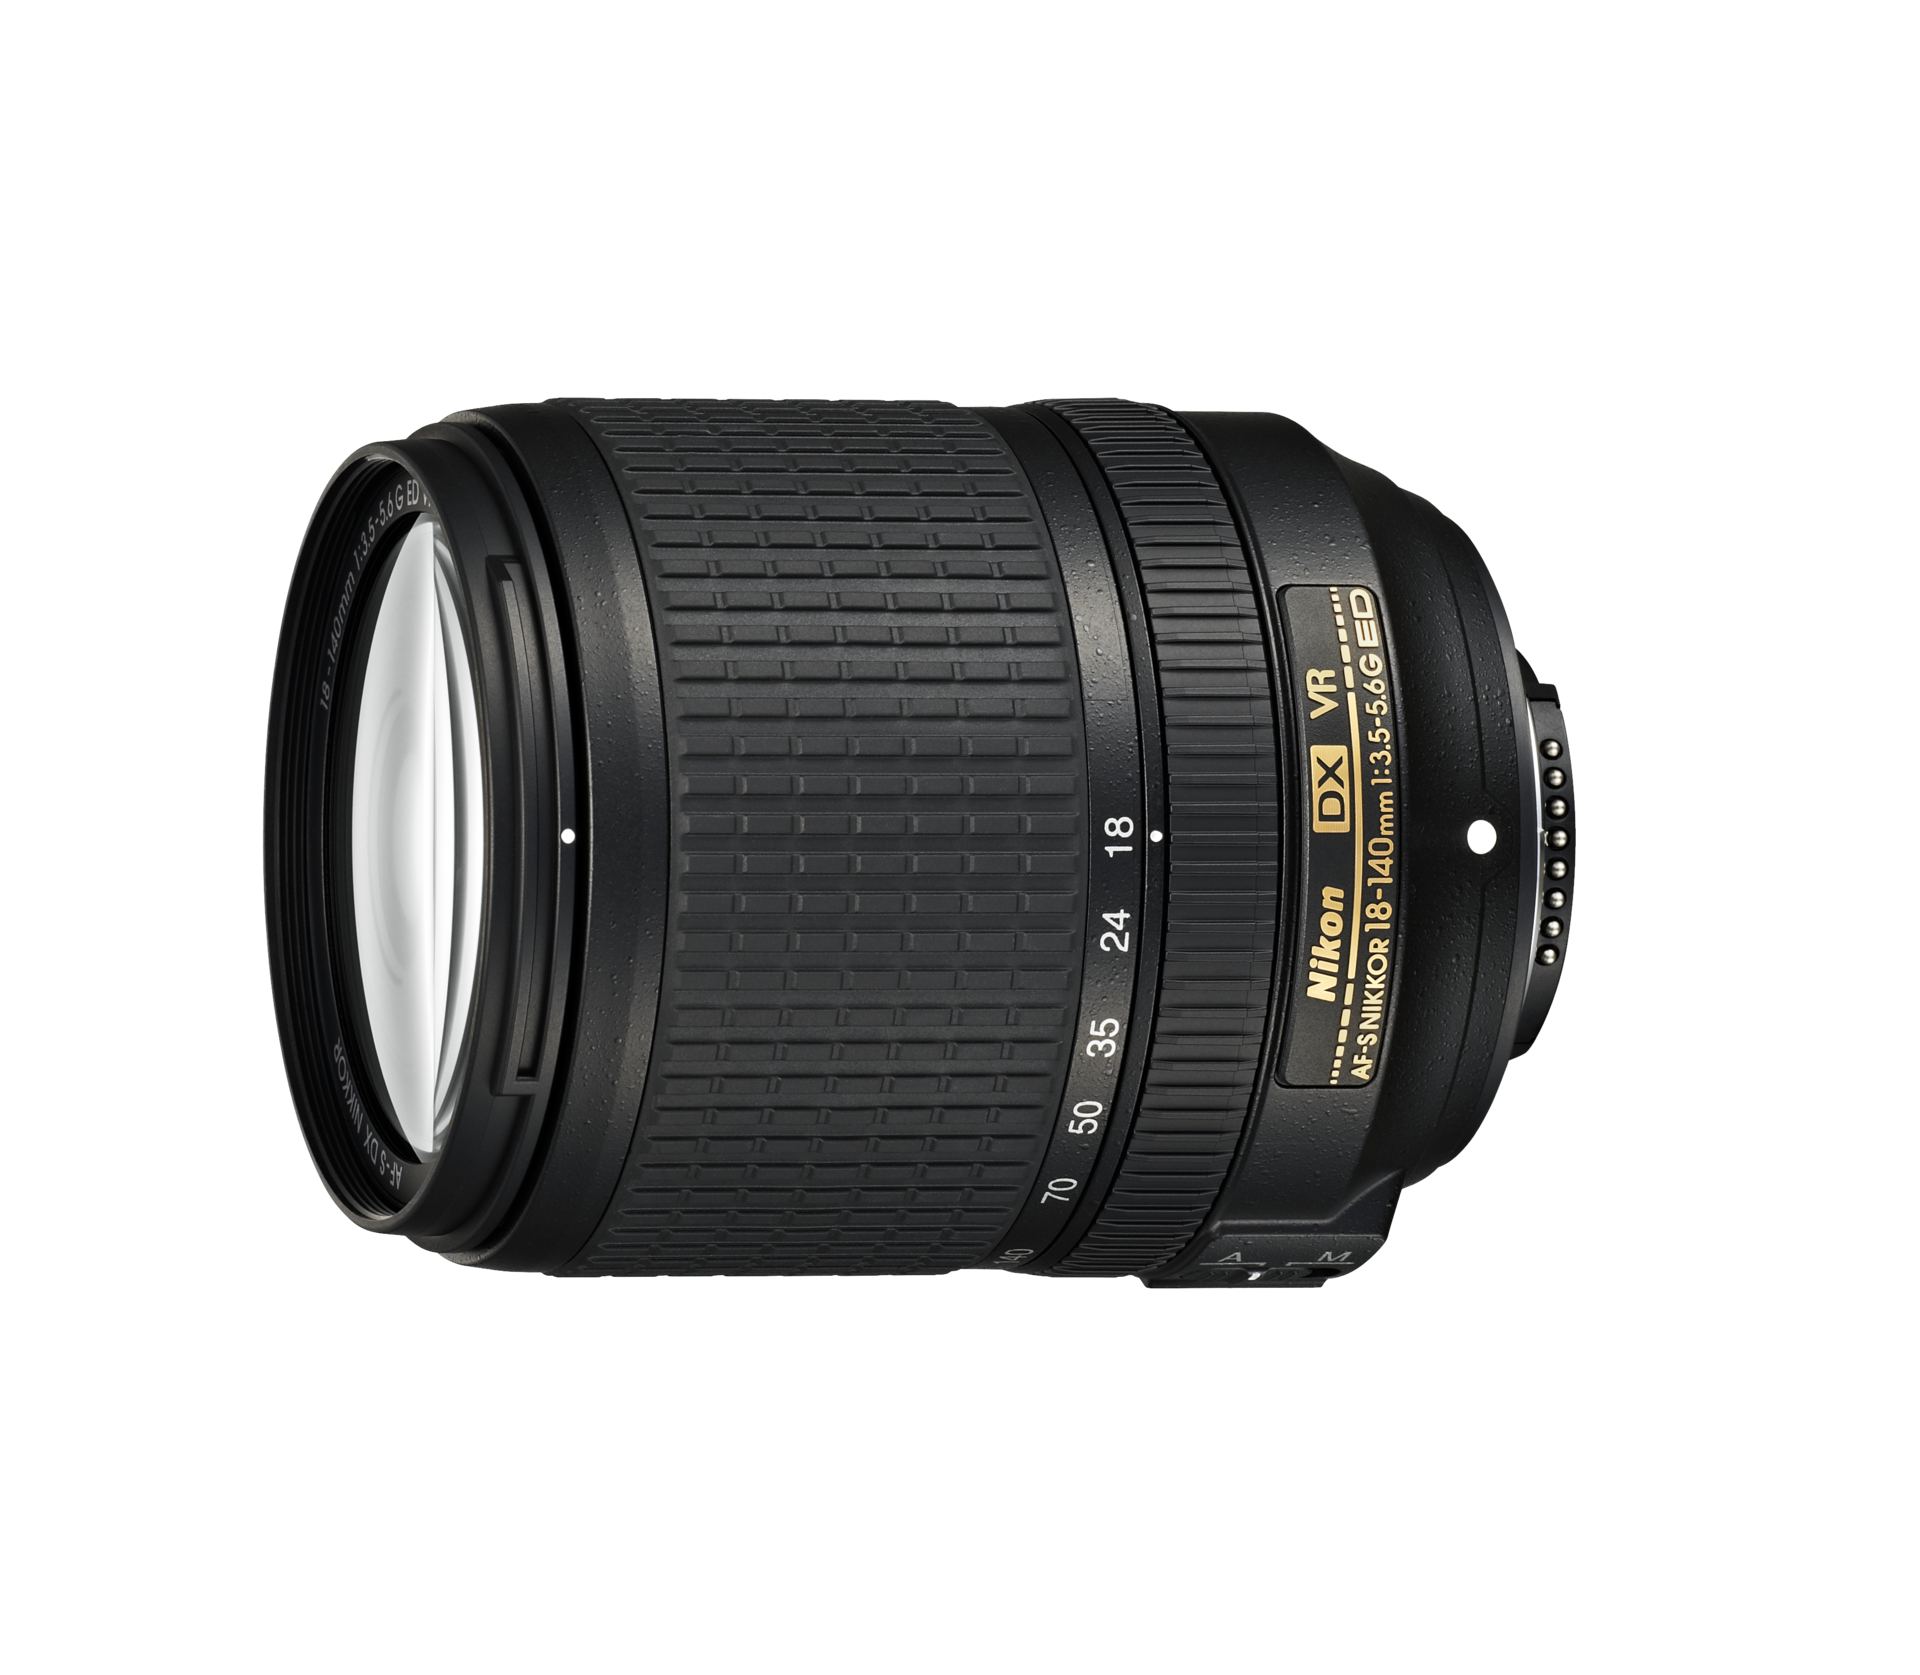 Nikon AF-S DX NIKKOR 18-140mm f/3.5-5.6G ED VR Lens 